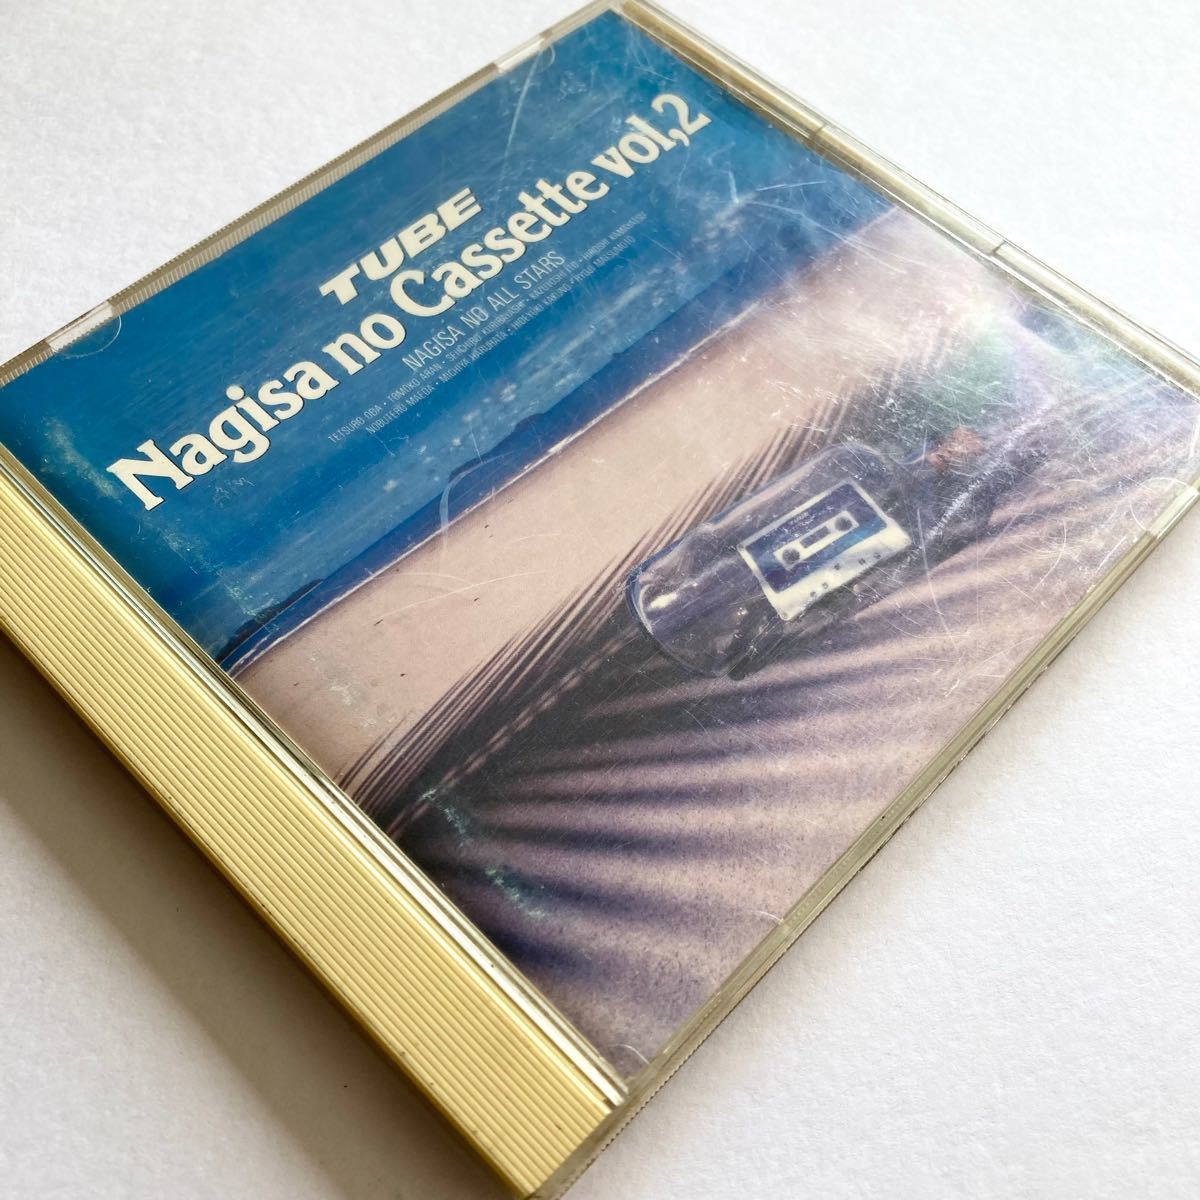 渚のカセットvol,2  渚のオールスターズ TUBE CD